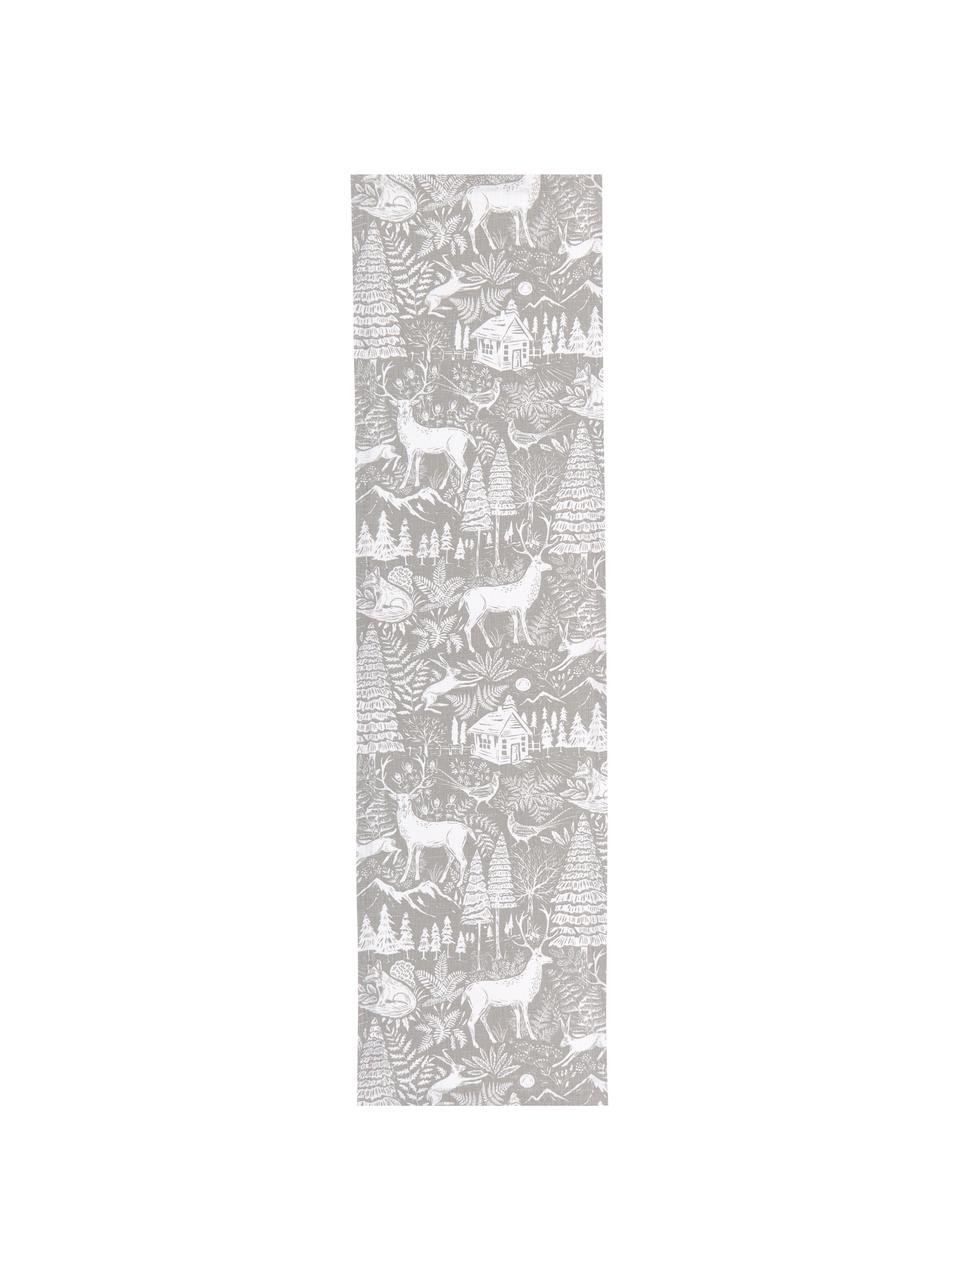 Tischläufer Forest mit winterlichen Motiven, 85% Ramie, 15% Baumwolle, Beige, Creme, 40 x 145 cm